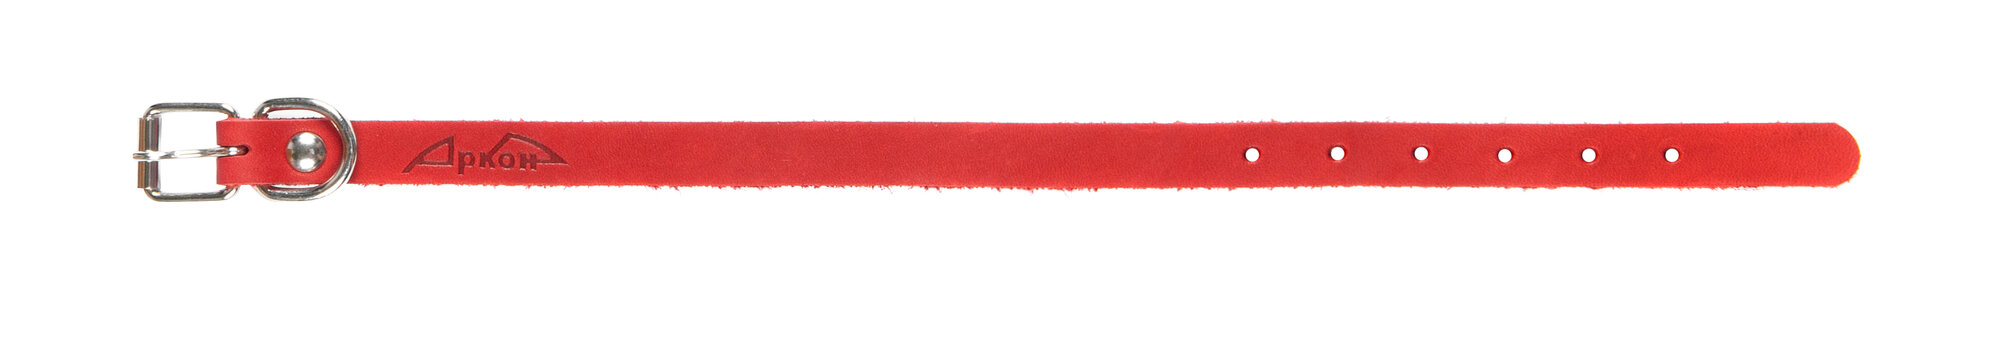 Ошейник аркон кожаный для собак однослойный красный (21-29 см/14 мм)